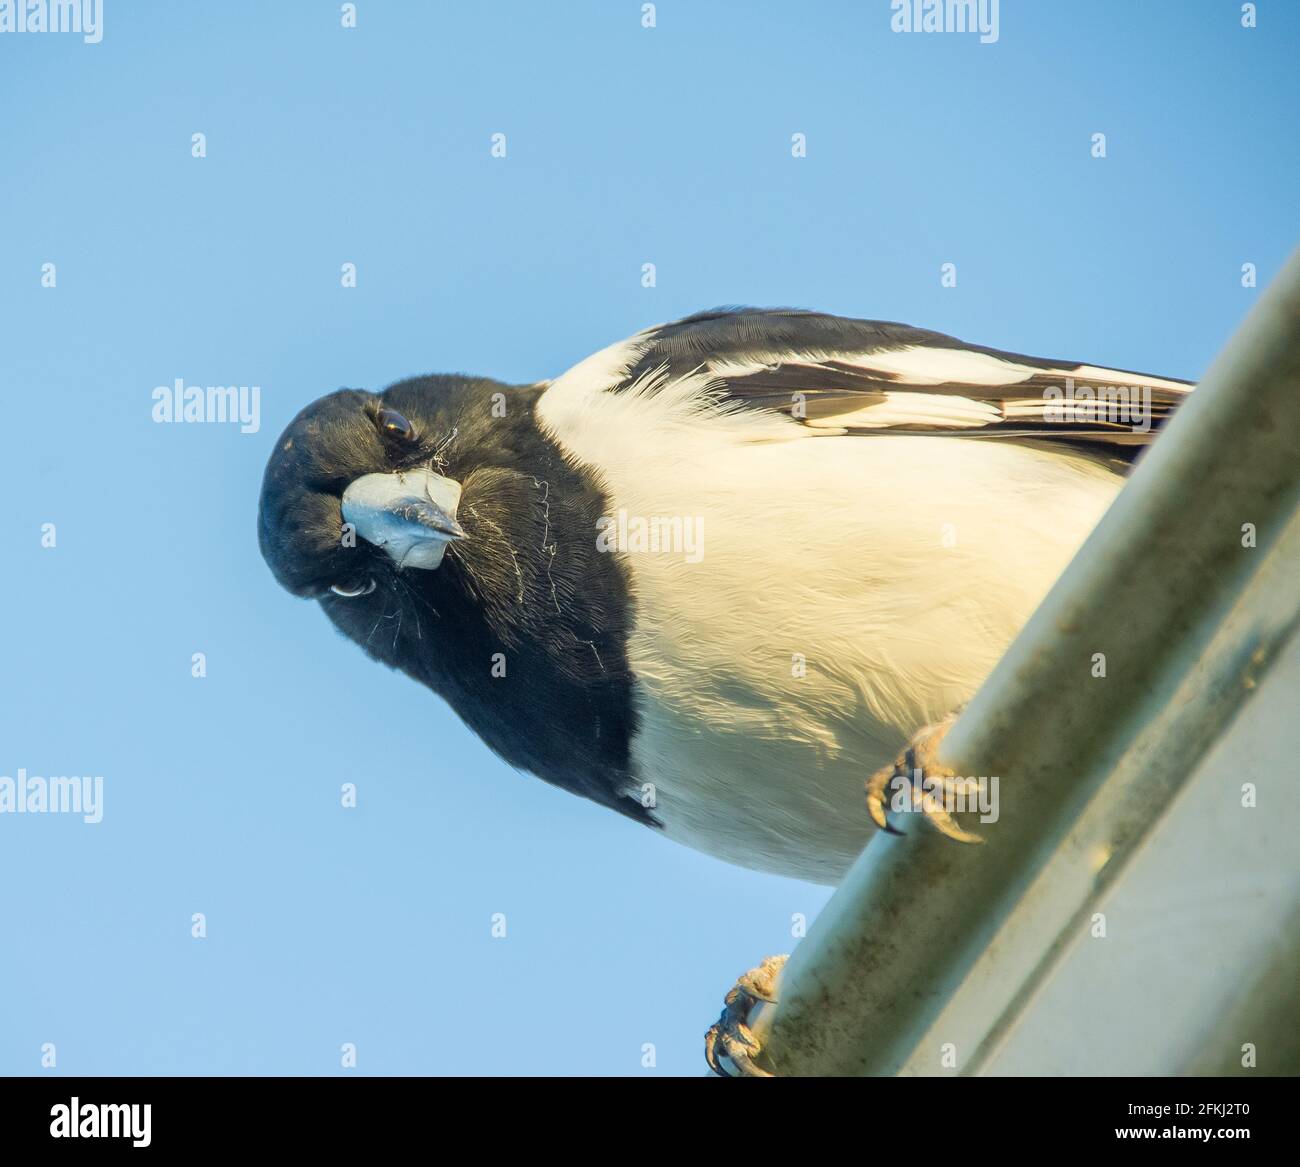 Gros plan de l'oiseau-butcherbird à pied, Cracticus nigrogularis, toit perché en direction de la caméra. Queensland, Australie. Ciel bleu clair et ensoleillé. Banque D'Images